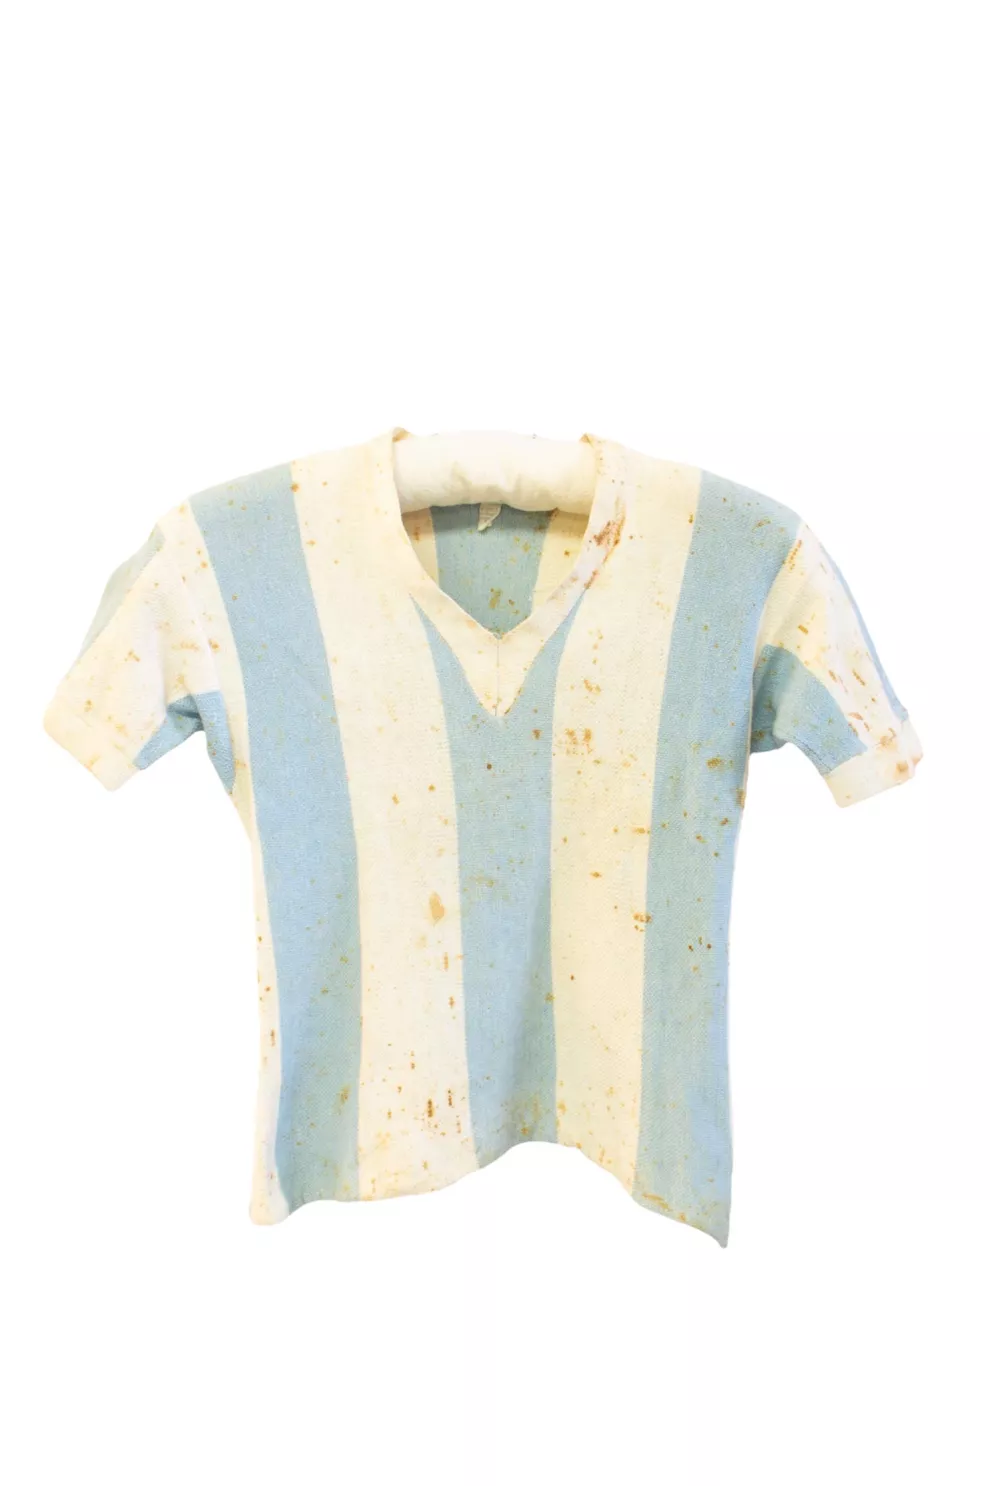 Camiseta argentina de 1953